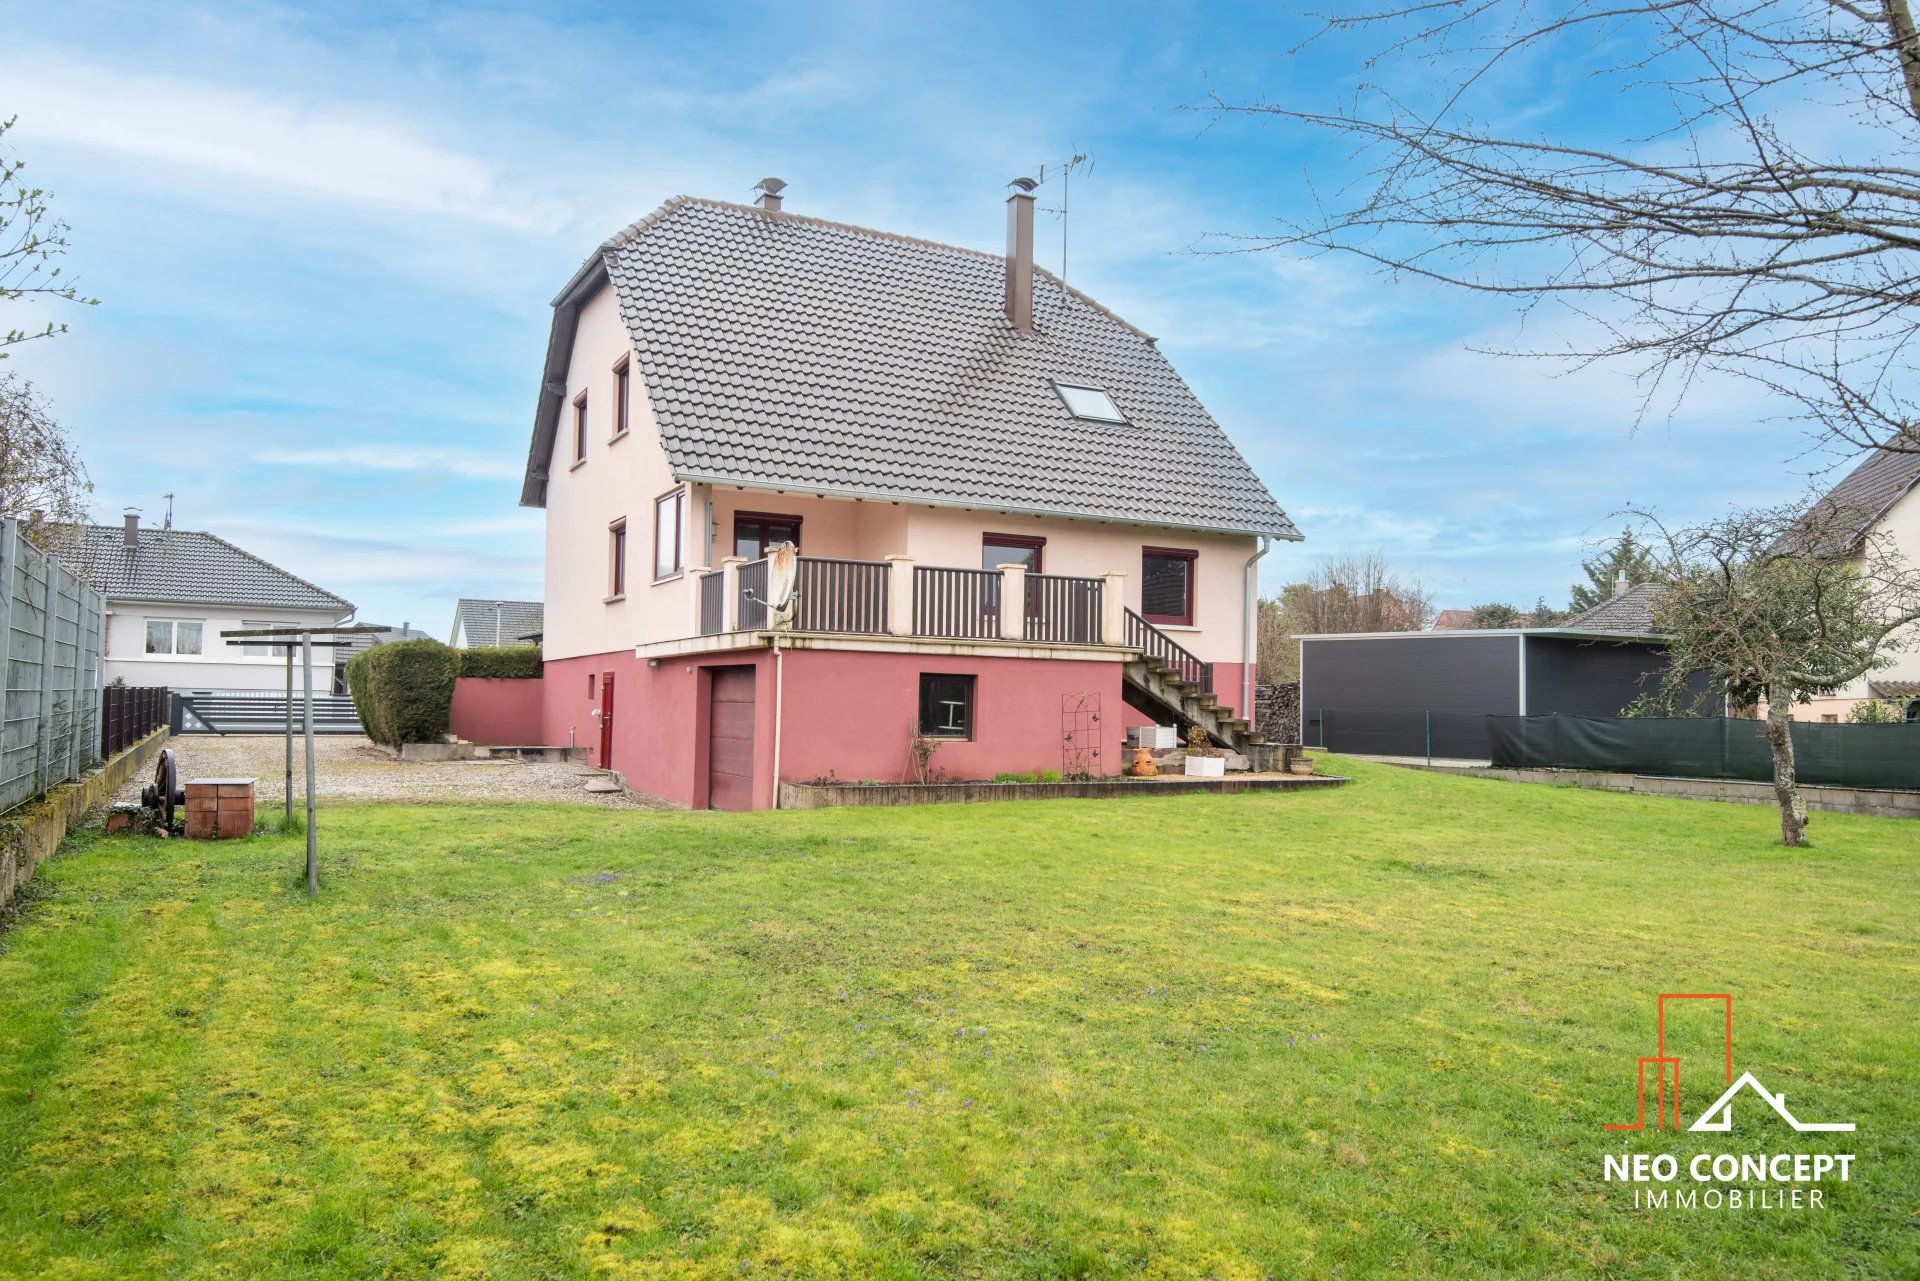 Vente Maison à Stattmatten (67770) - Neo Concept Immobilier